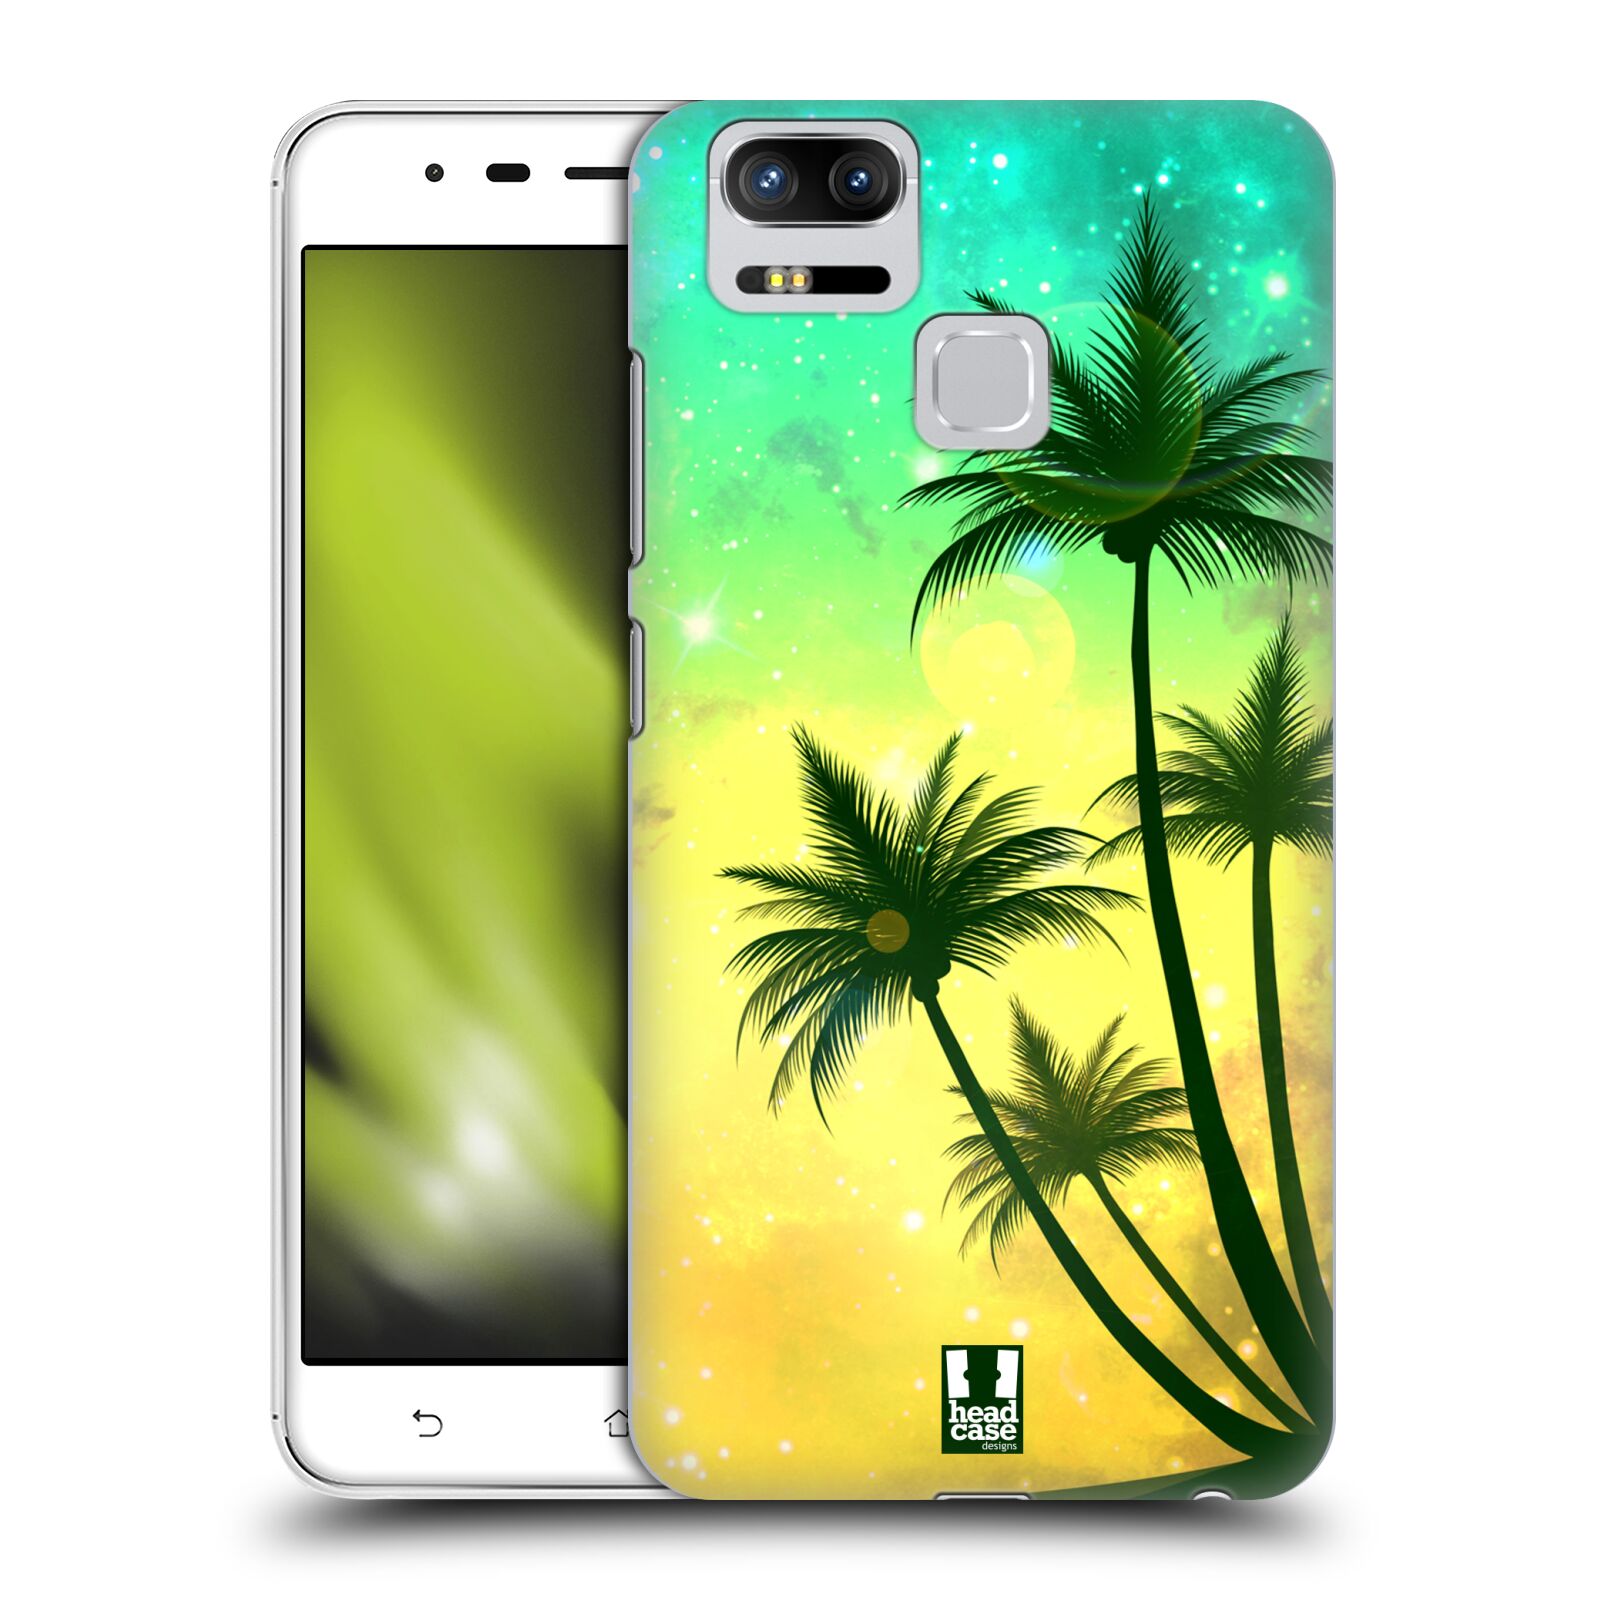 HEAD CASE plastový obal na mobil Asus Zenfone 3 Zoom ZE553KL vzor Kreslený motiv silueta moře a palmy TYRKYSOVÁ